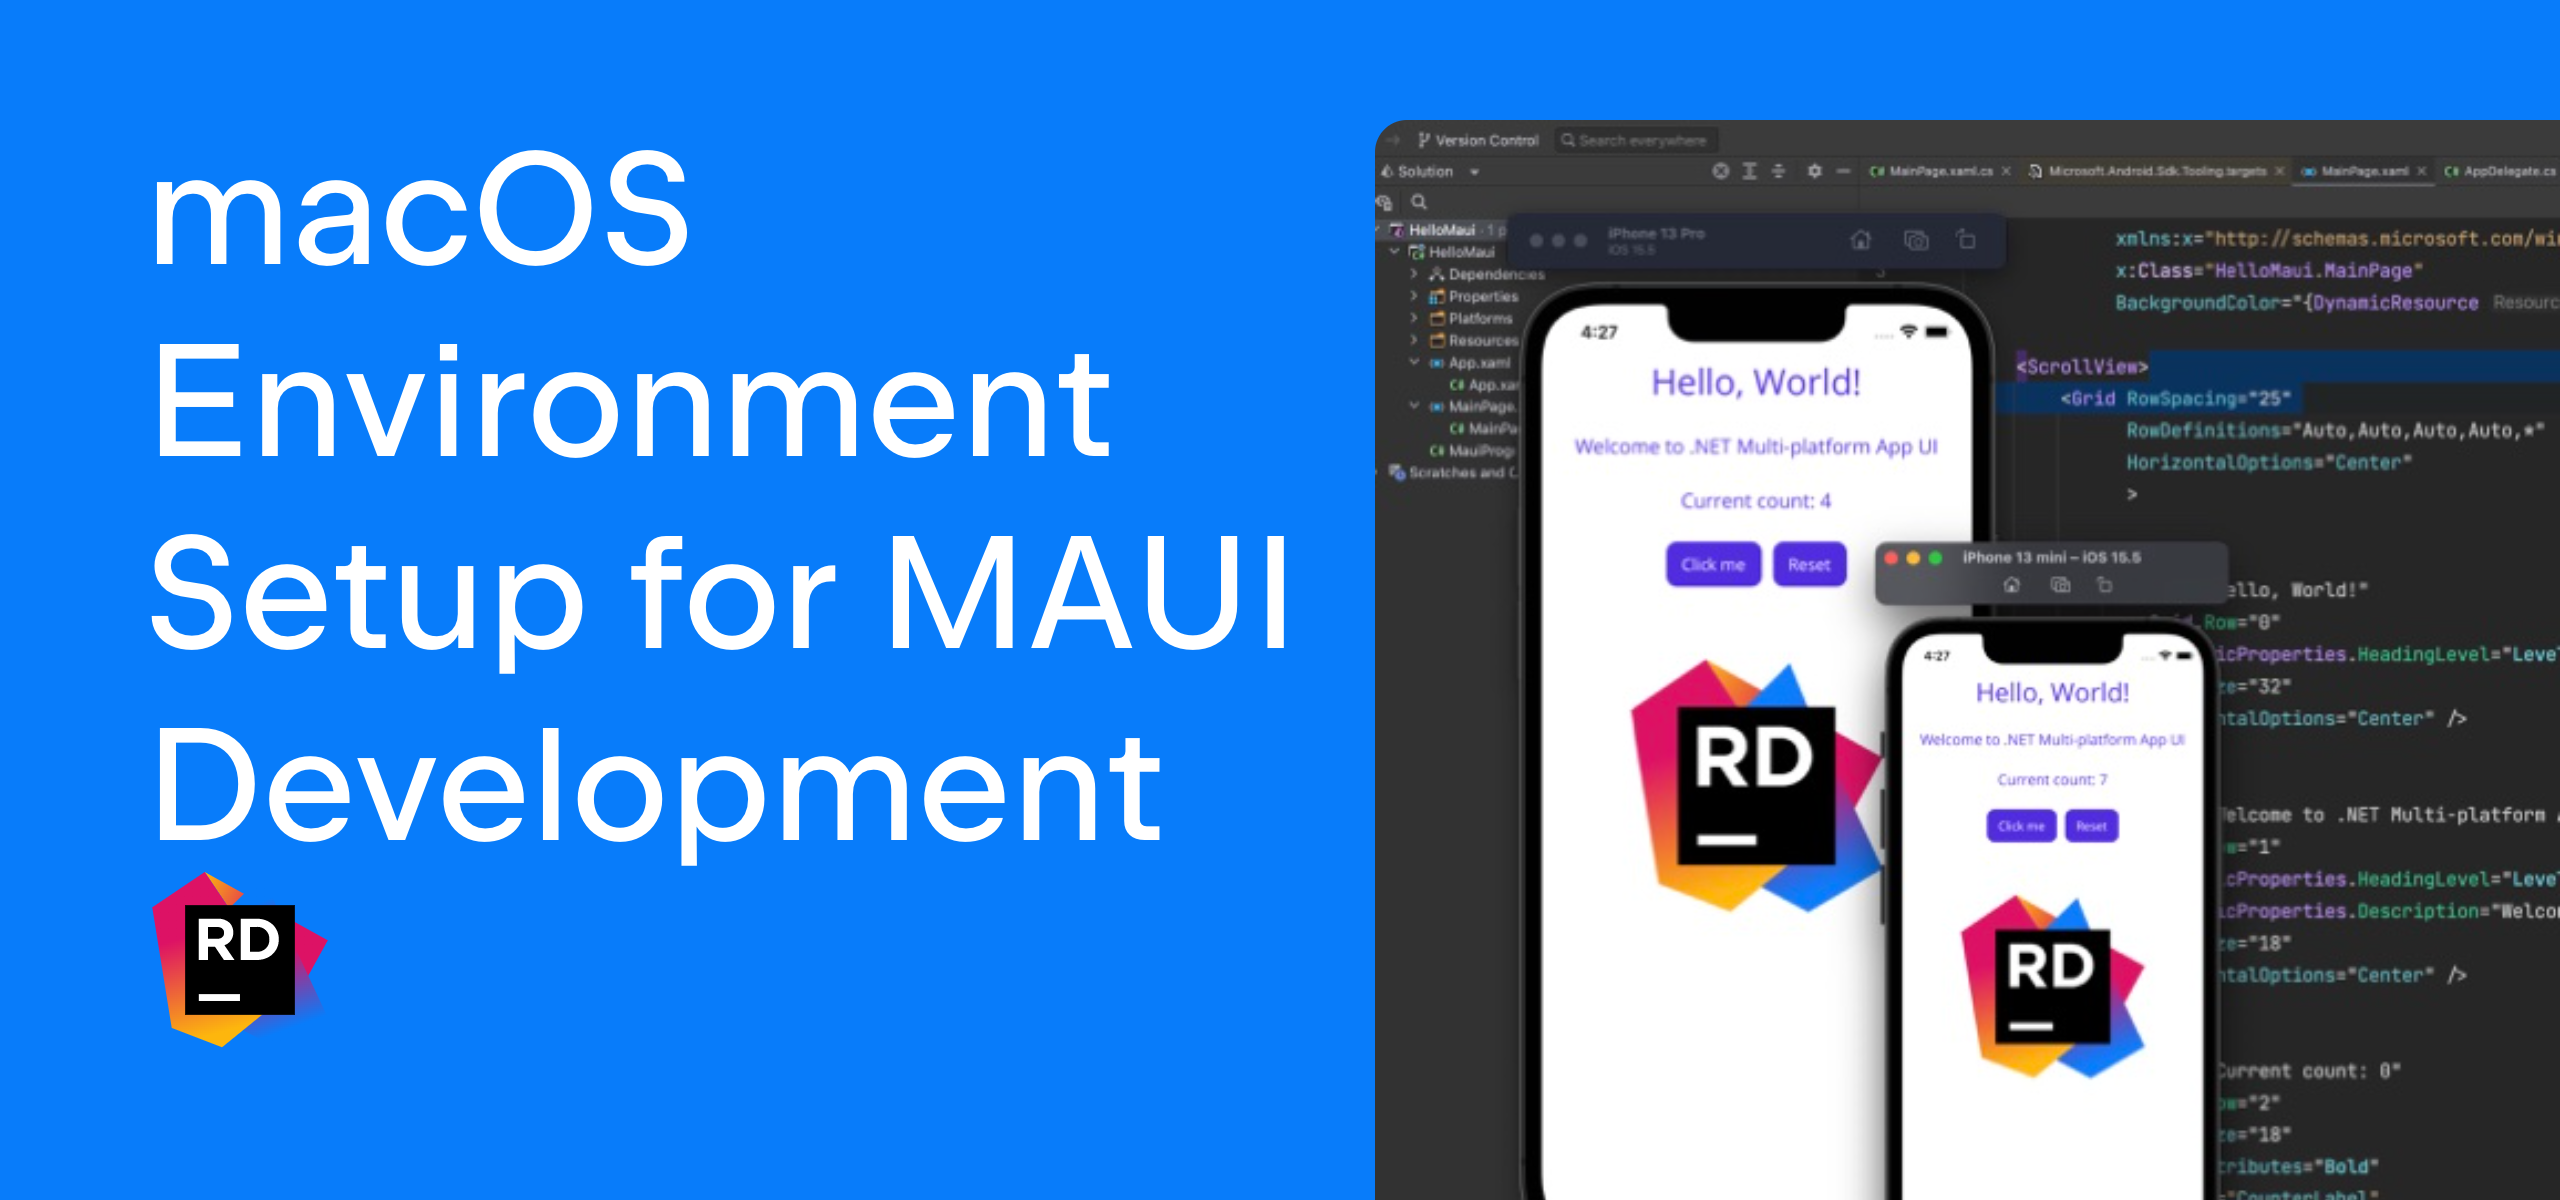 macOS Environment Setup for MAUI Development